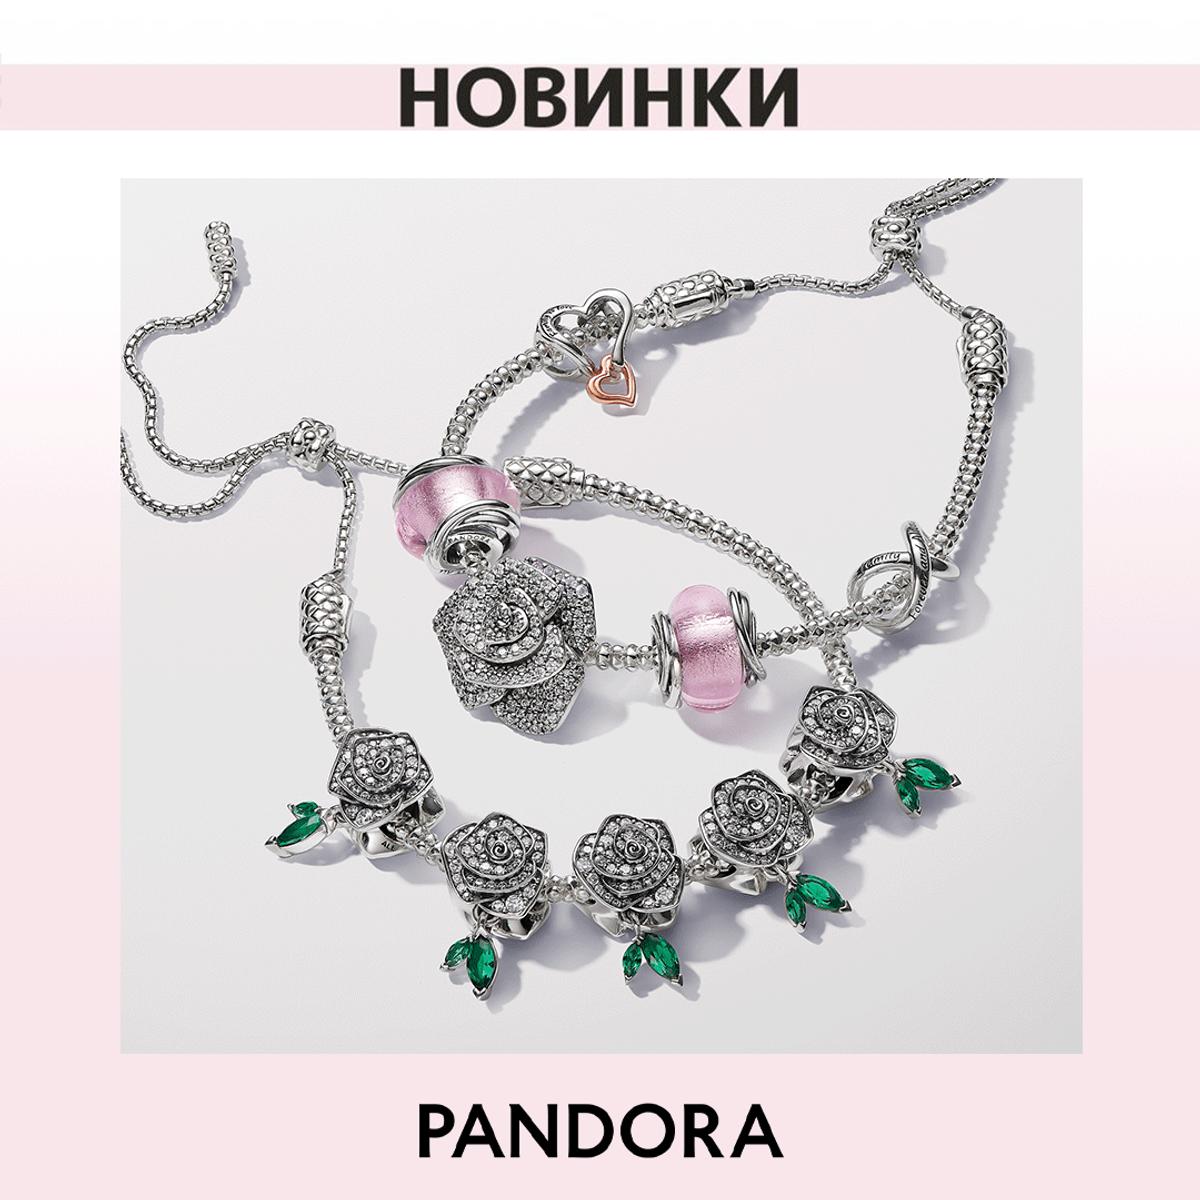 Celebrate spring with Pandora!